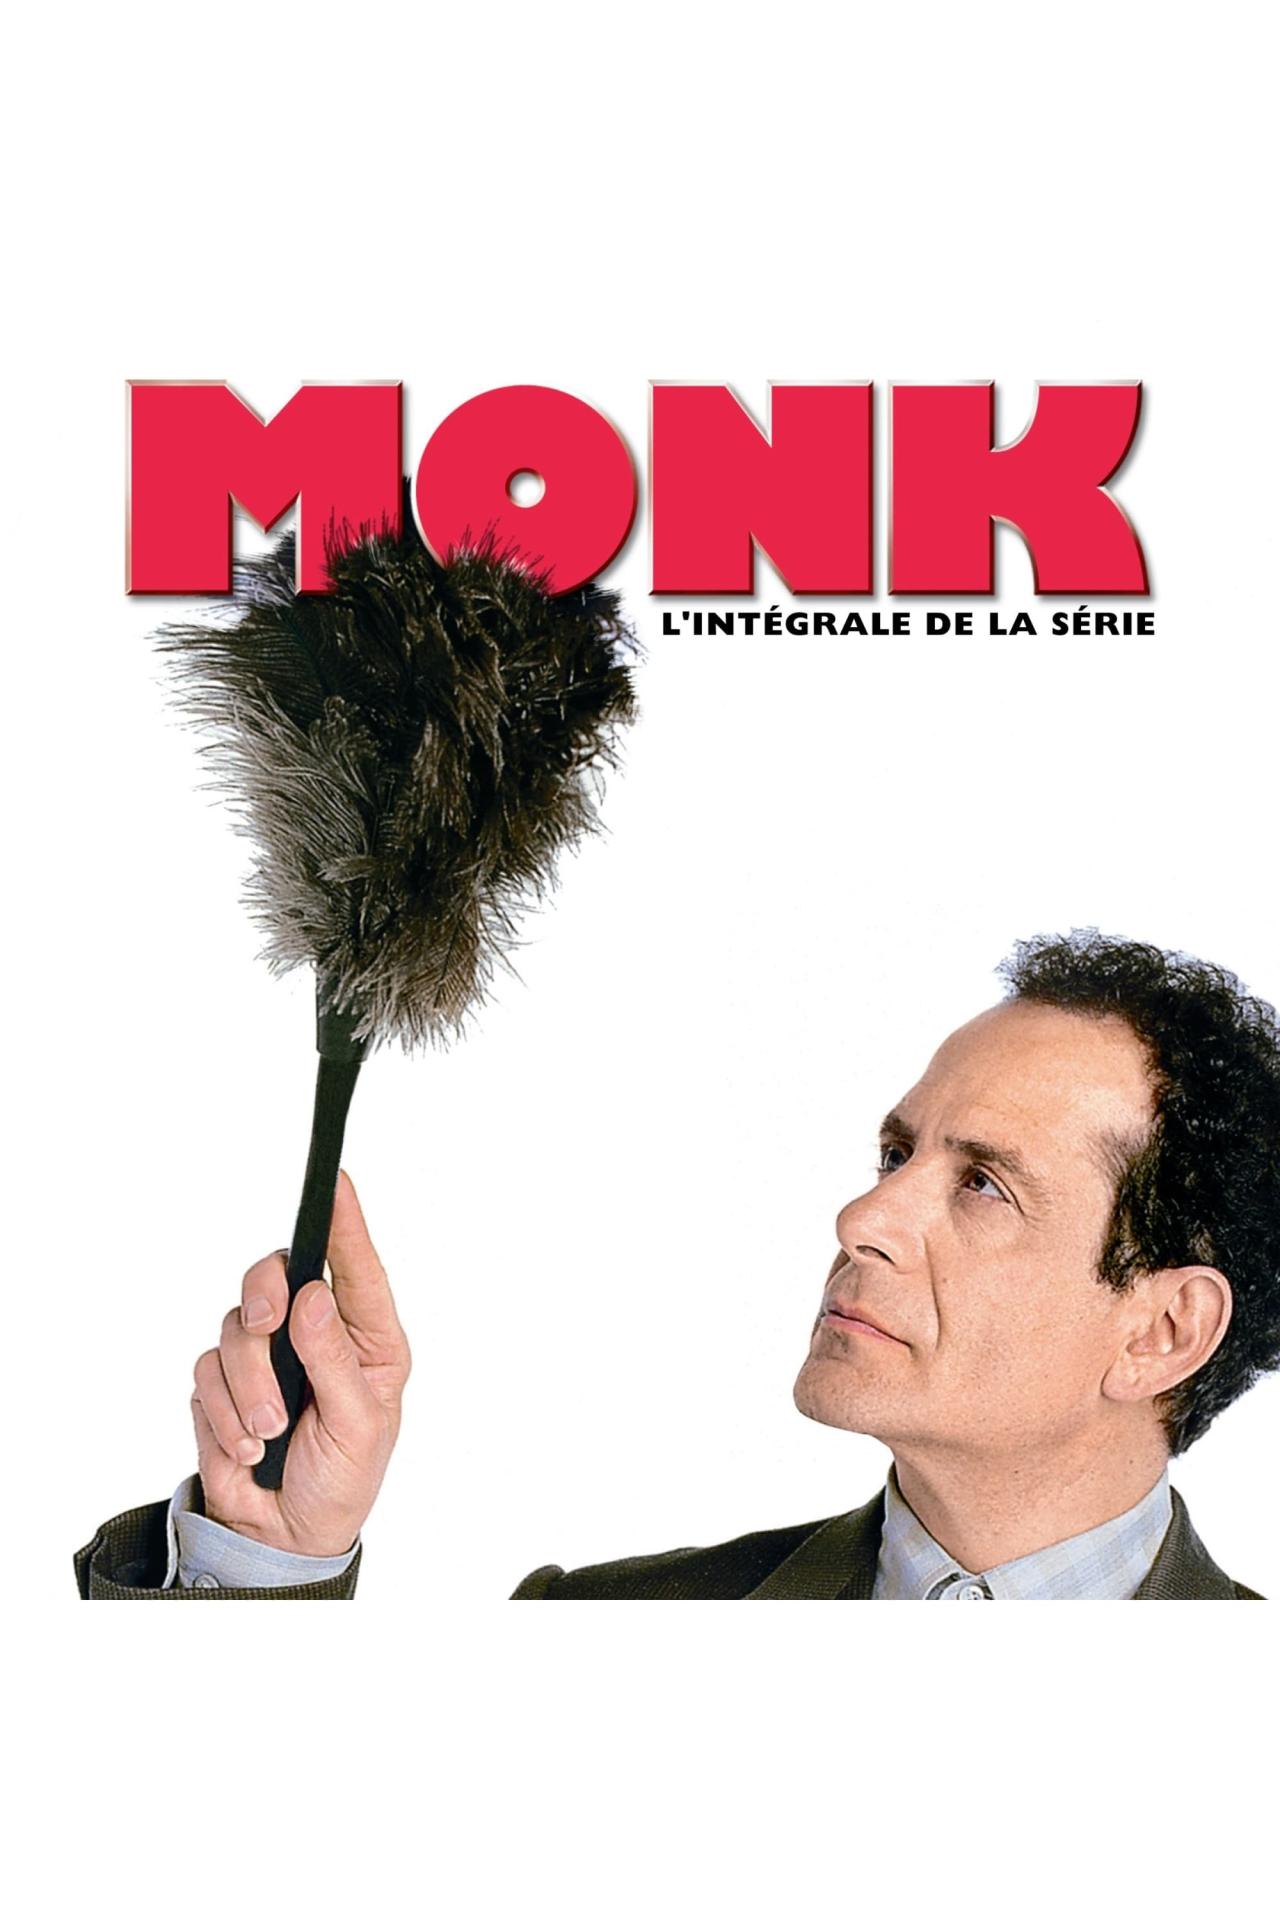 Les saisons de Monk sont-elles disponibles sur Netflix ou autre ?